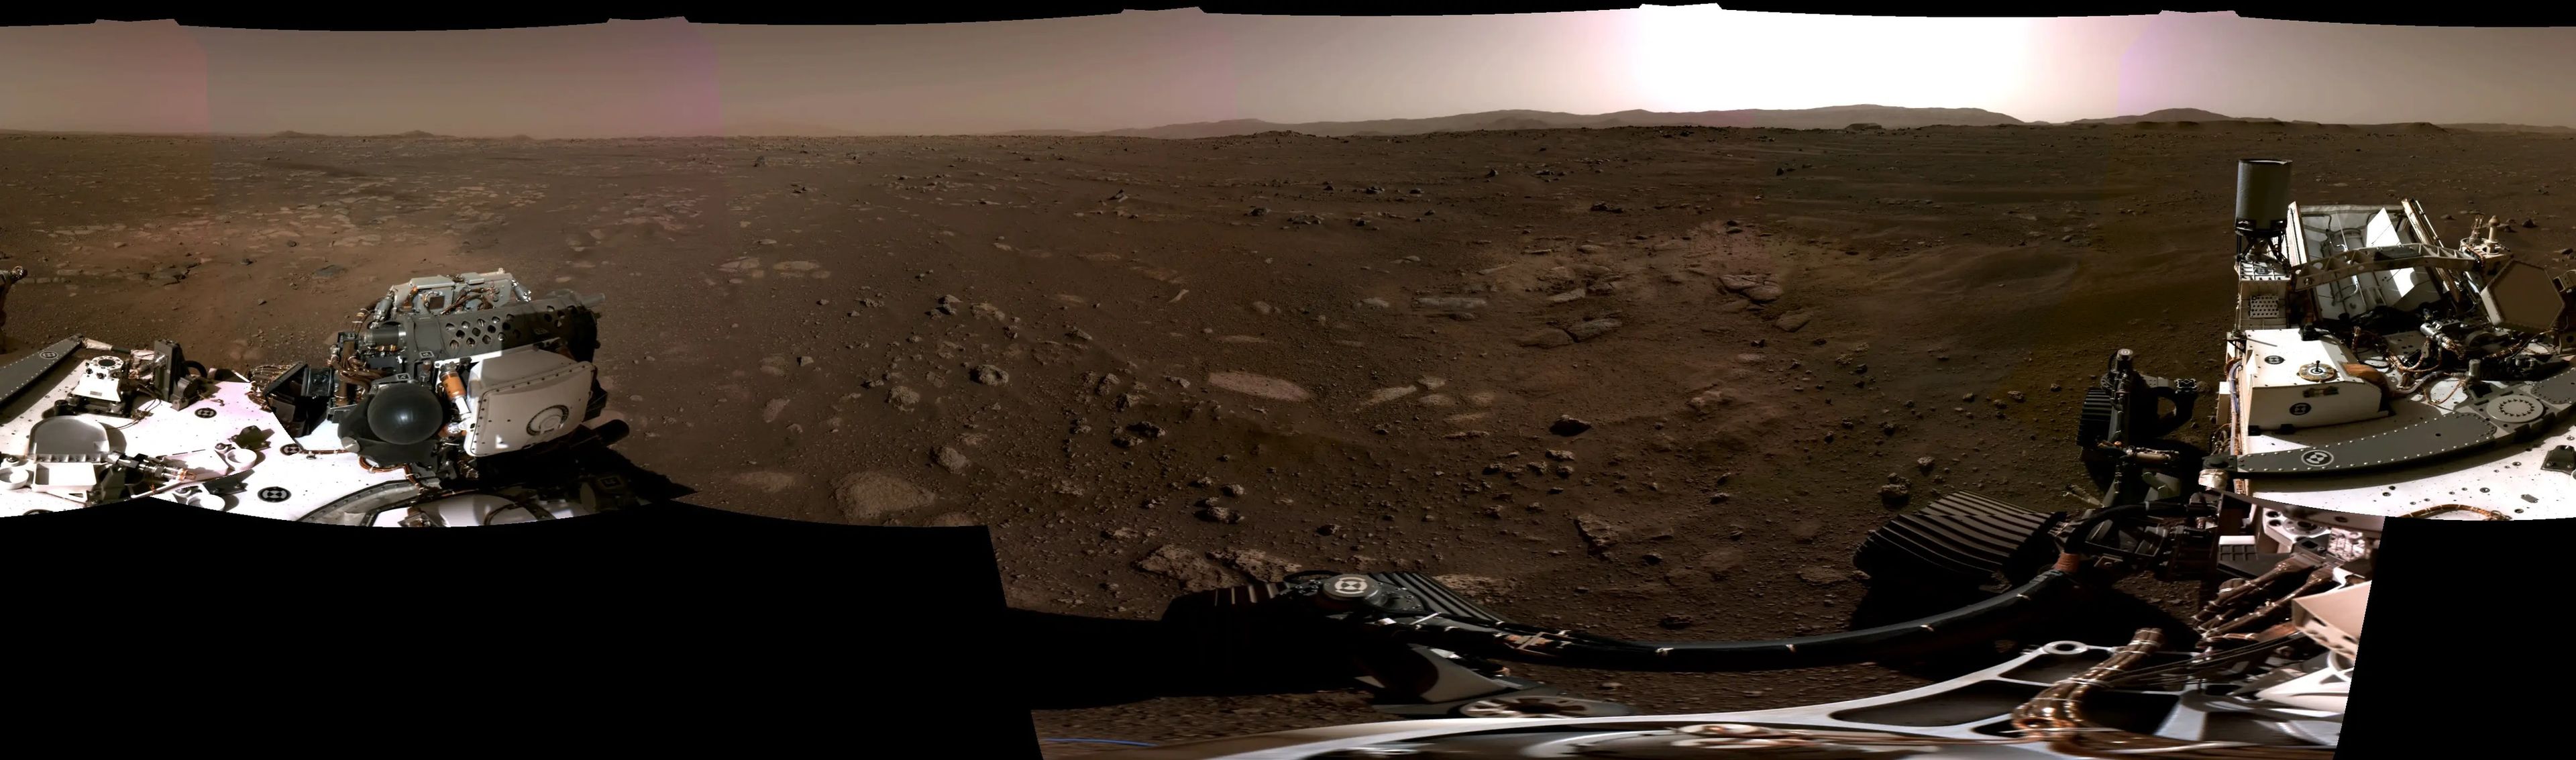 Esta panorámica, tomada el 20 de febrero de 2021 por las cámaras de navegación del rover Perseverance Mars, se unió a partir de 6 imágenes individuales.